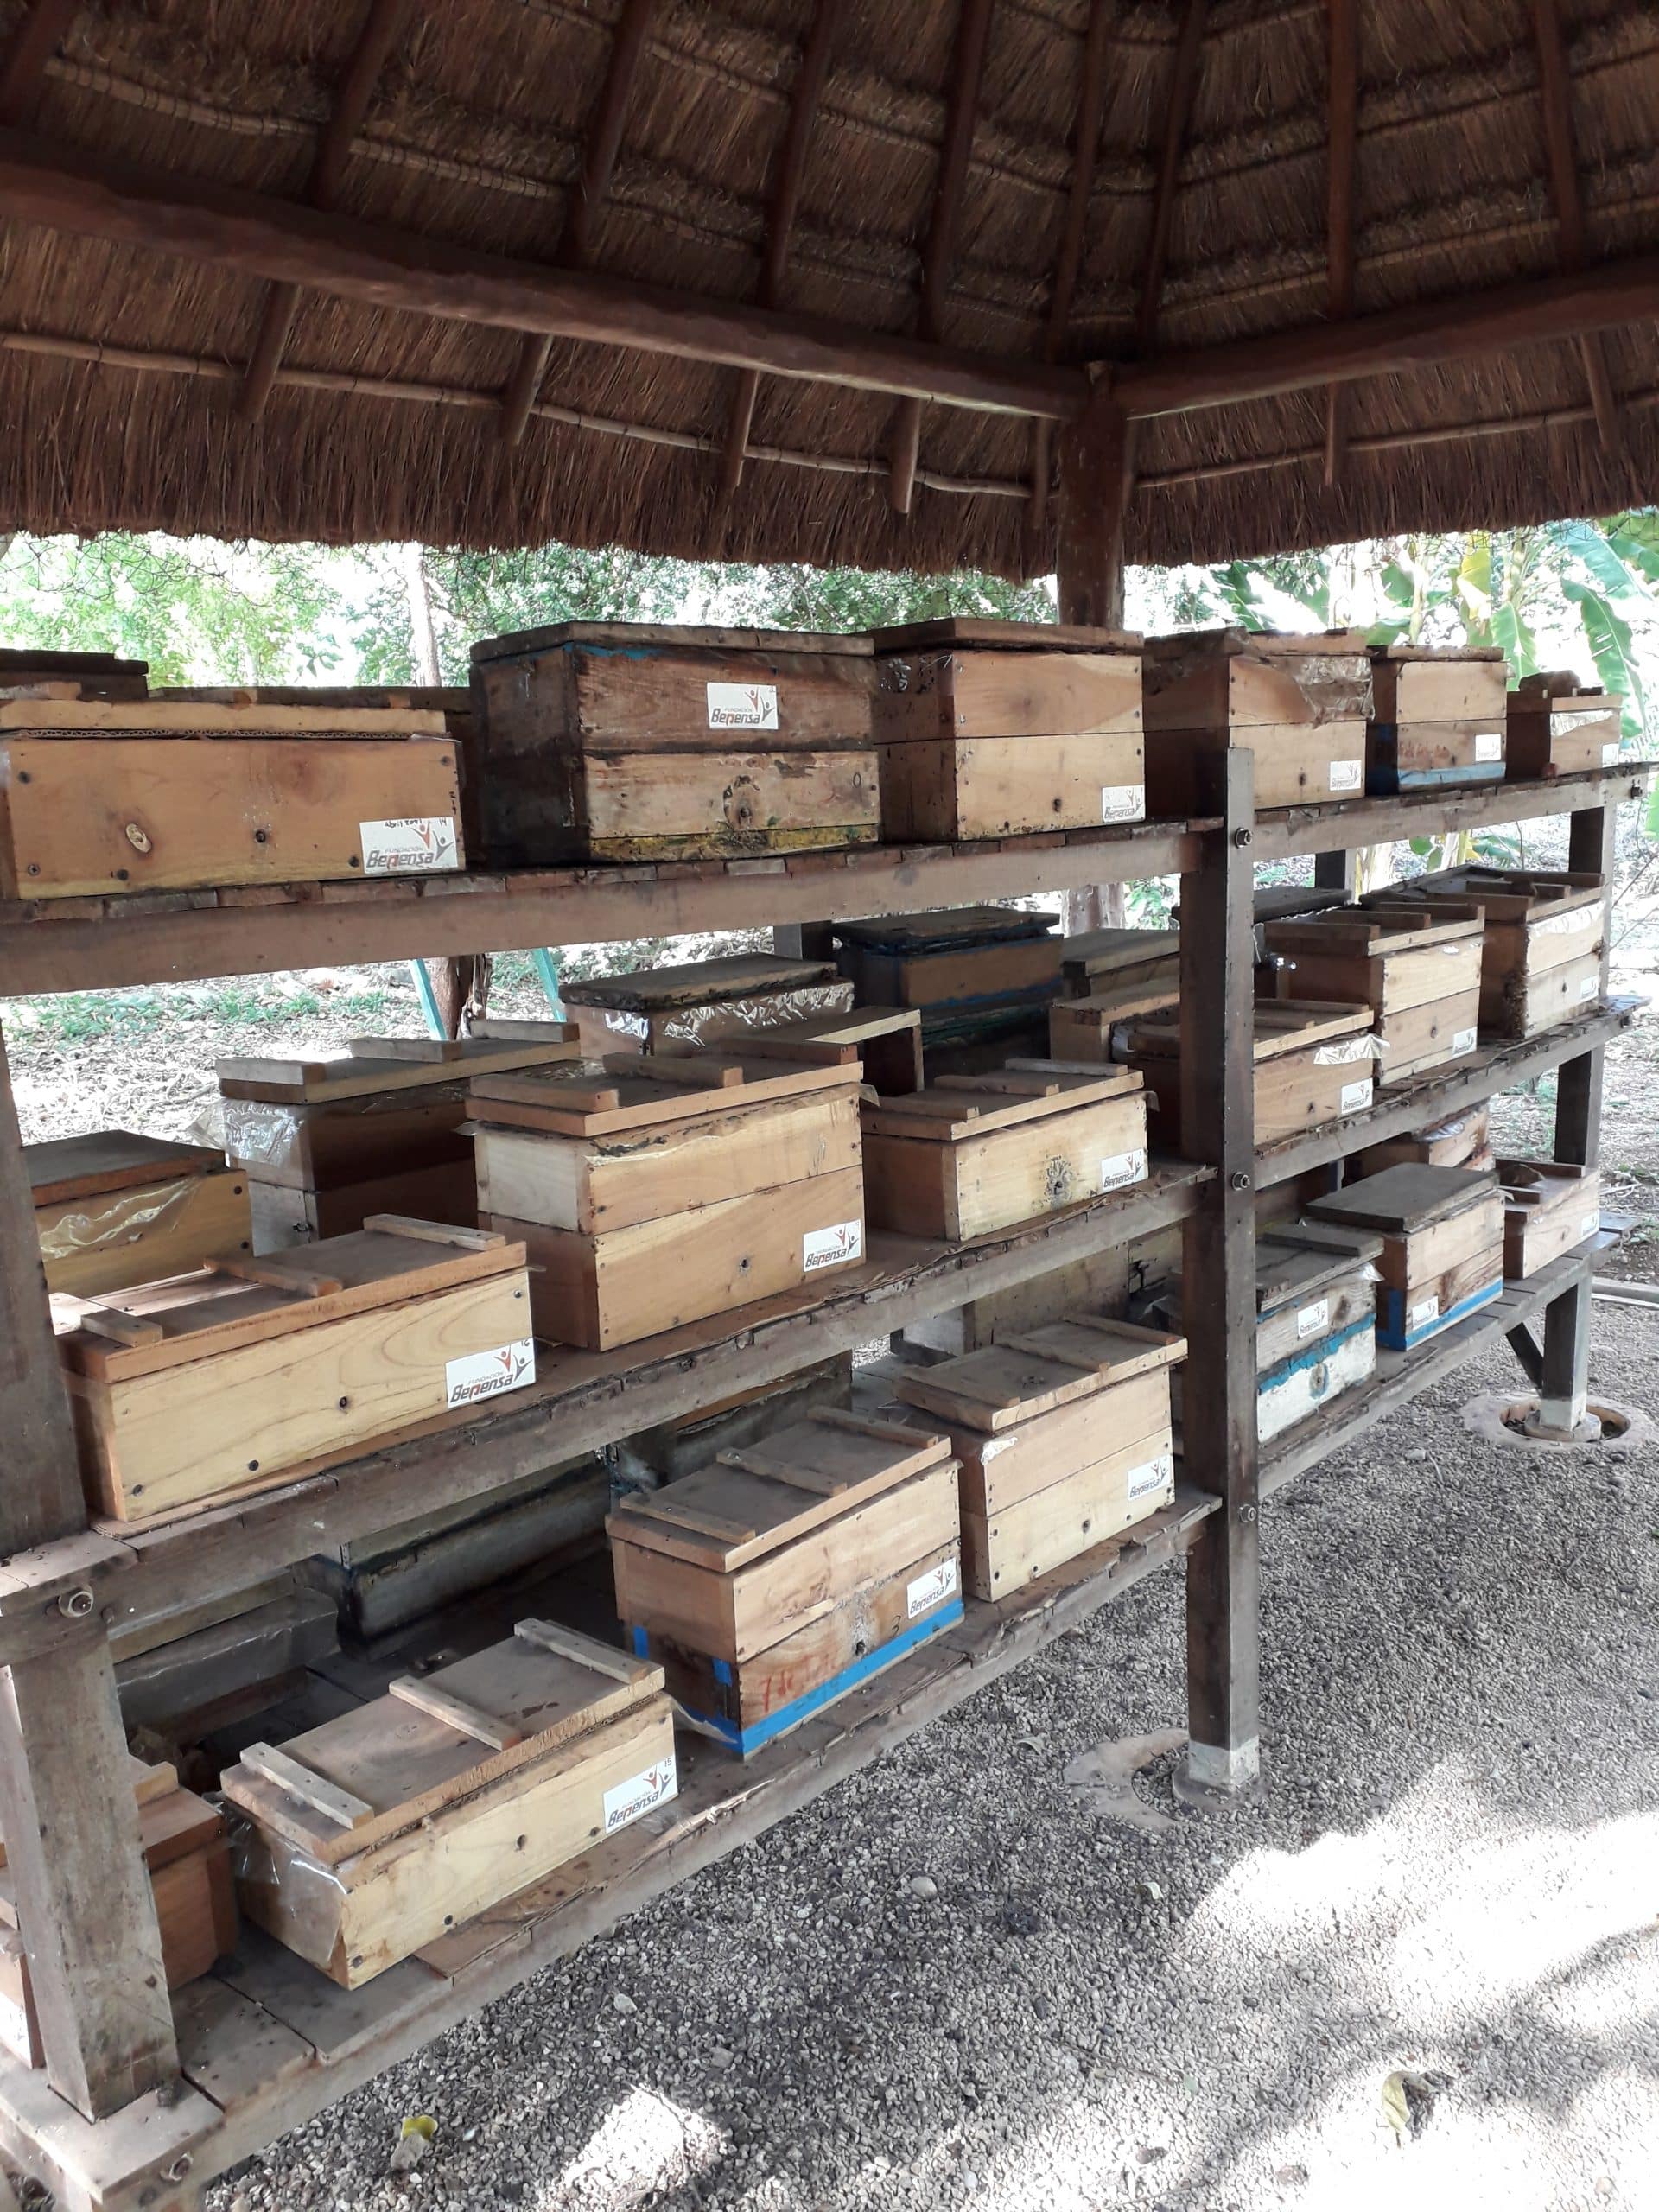 Cajones TIBGA para mantenimiento de colonias de abeja melipona. Foto: Will Rodríguez, 2022. 